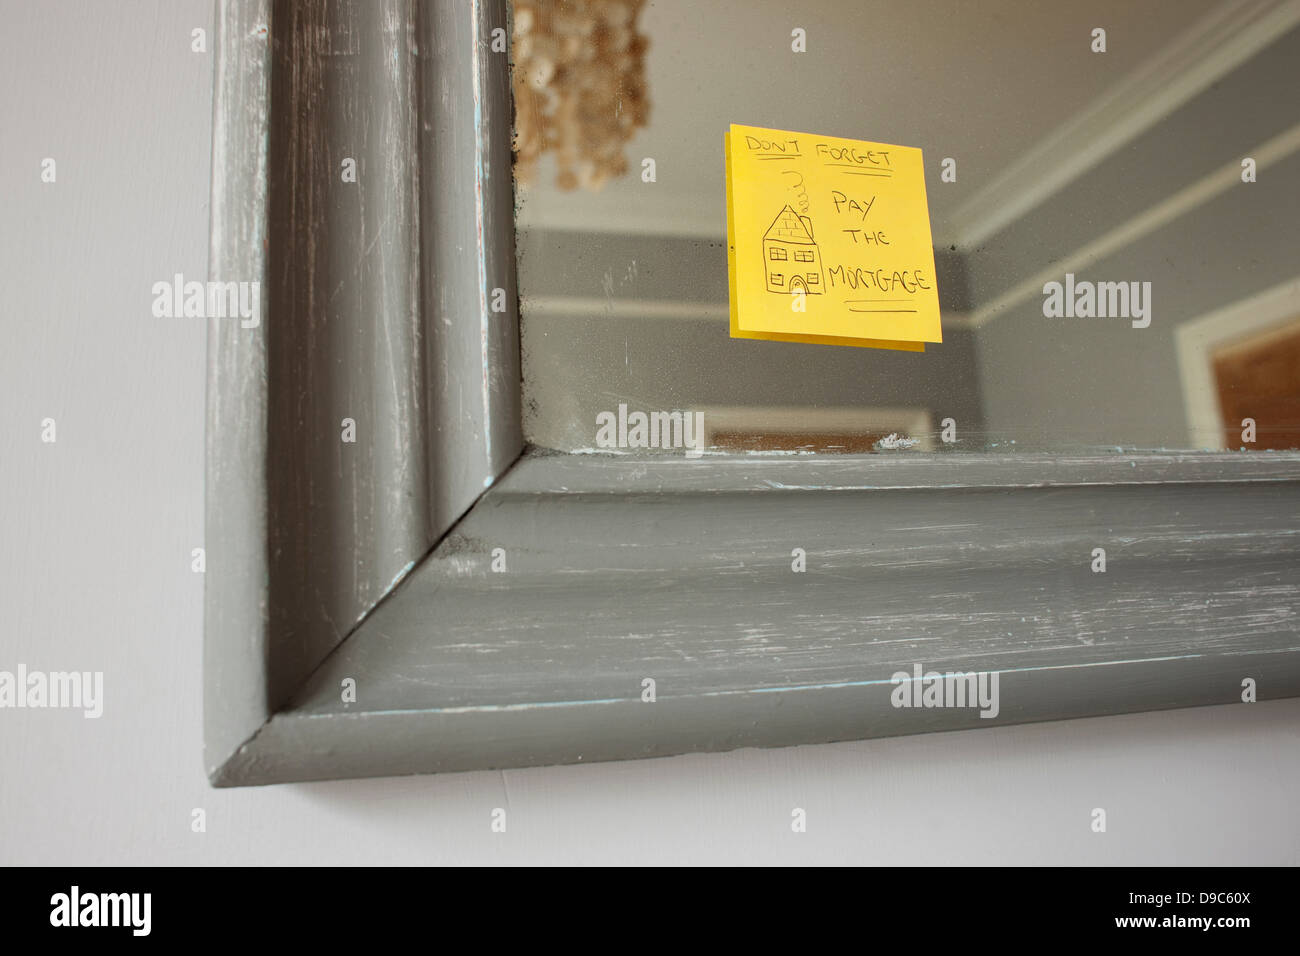 Selbstklebende Hinweis auf Spiegel sagen: "Vergesst nicht, die Hypothek zu bezahlen" Stockfoto